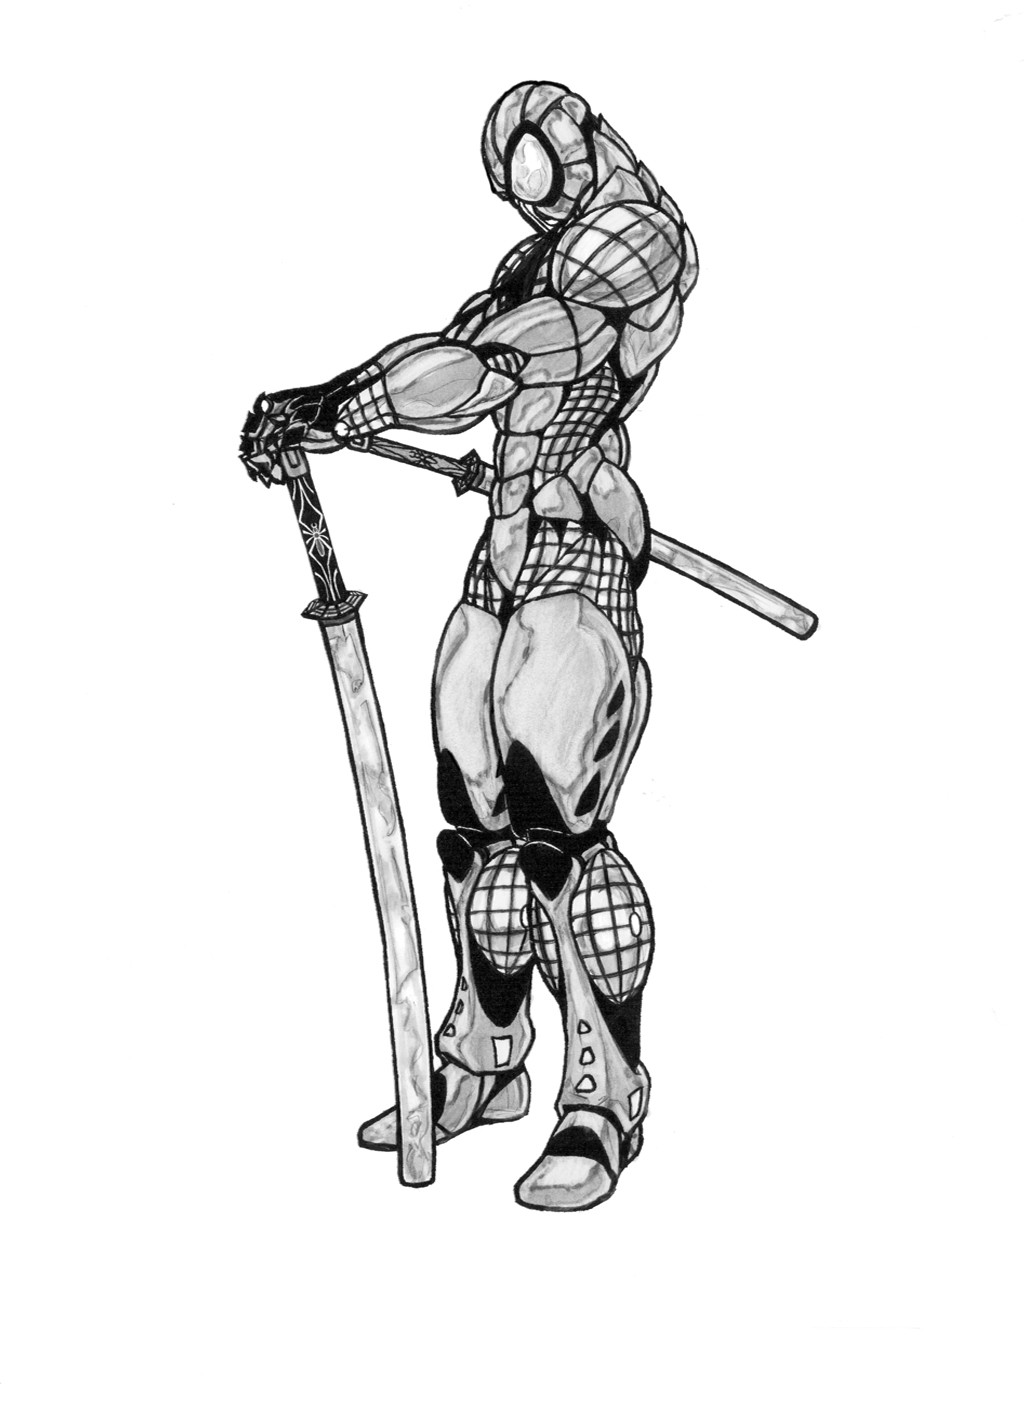 Samurai Spiderman